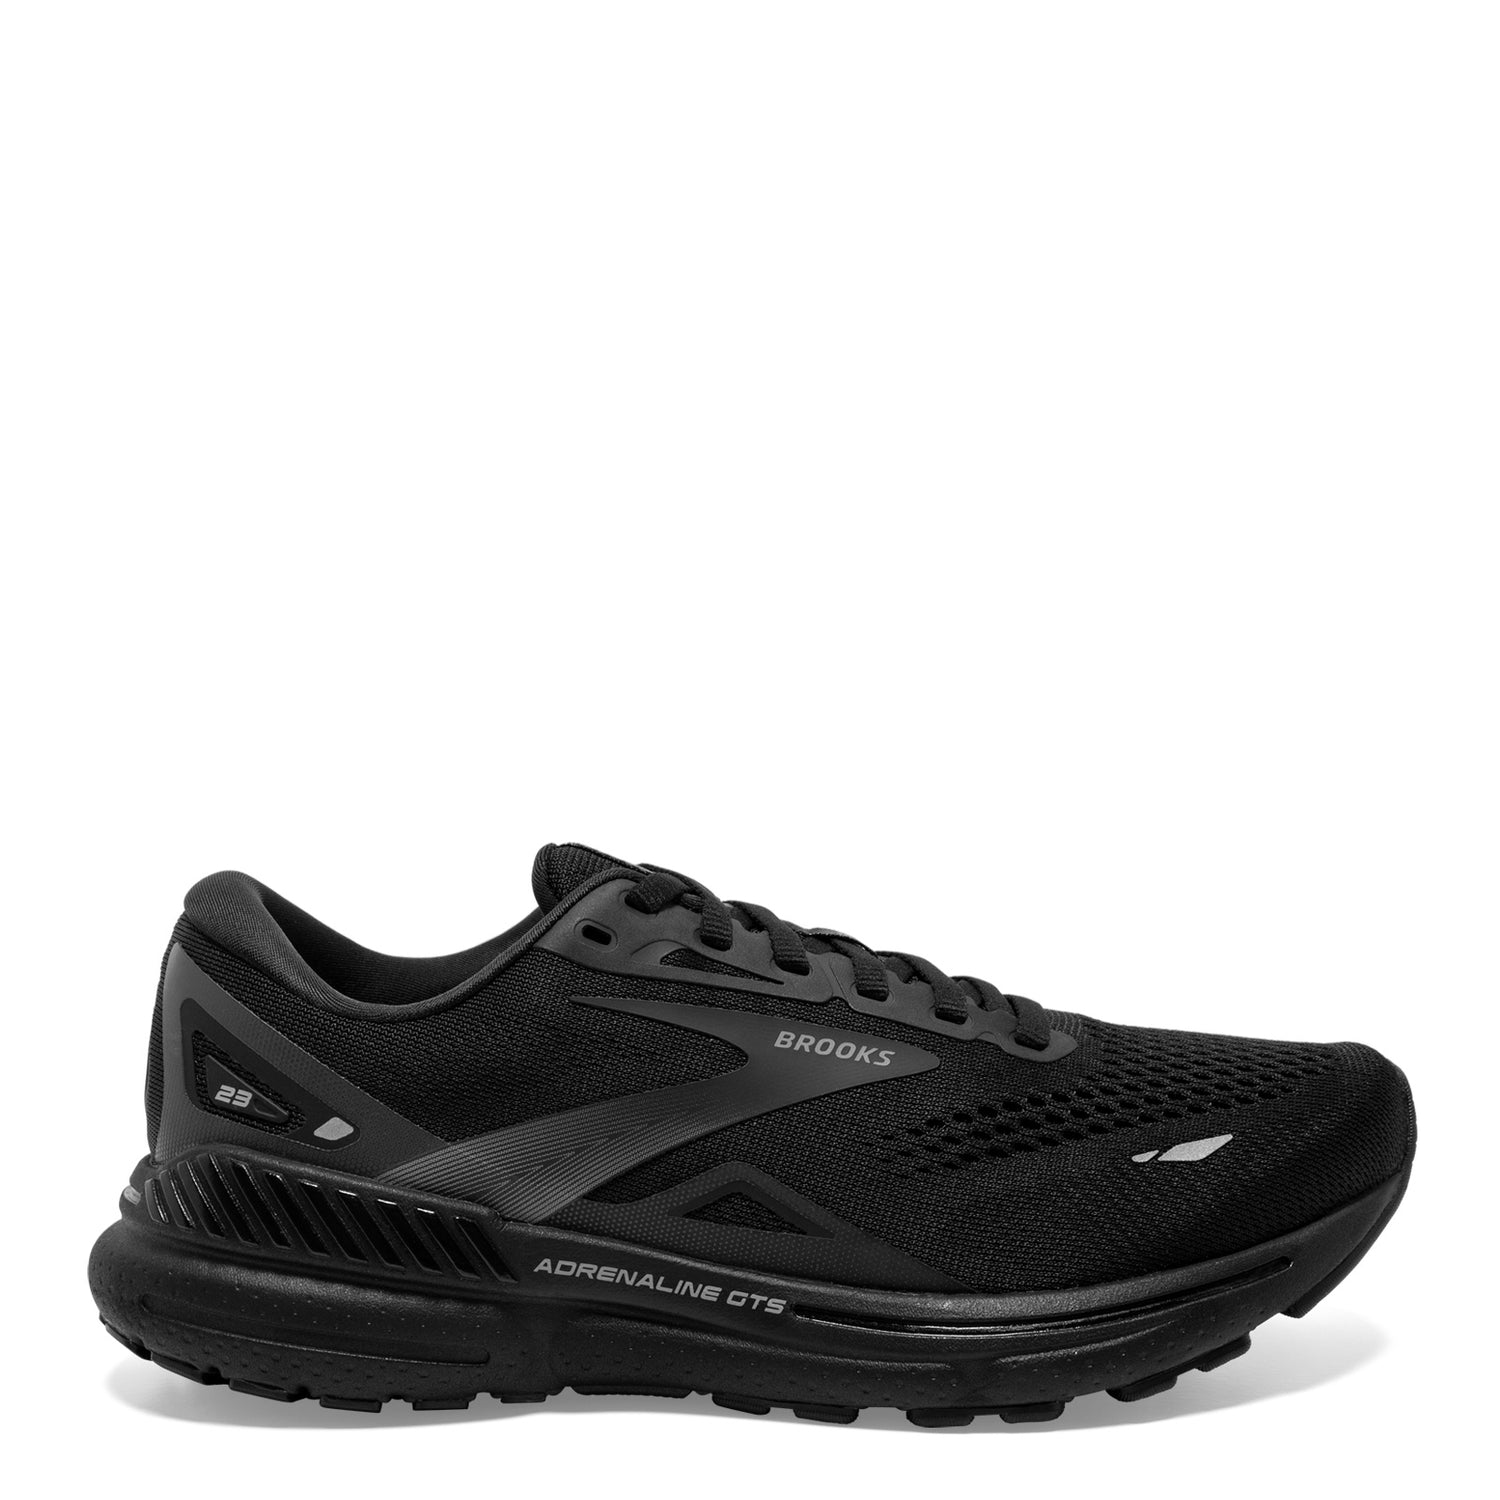 Peltz Shoes  Women's Brooks Adrenaline GTS 23 Running Shoe – Wide Width Black/Black/Ebony 120381 1D 020